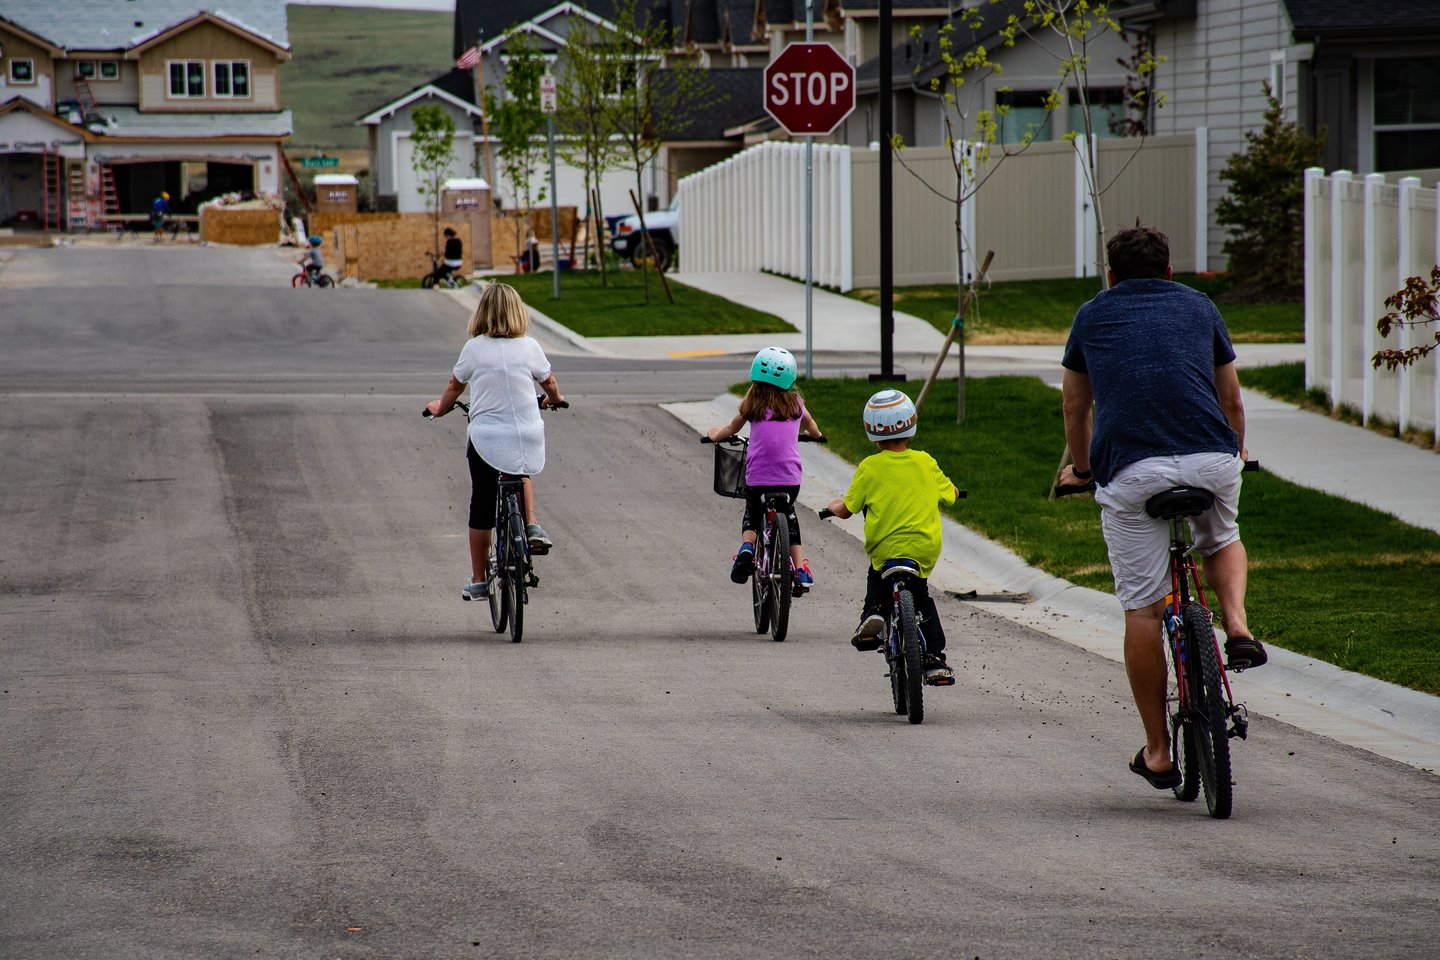  Dviračių autobusas – tai būdas, kaip pasiekti mokyklą važiuojant dviračiais kartu!<br> „Pexels“ nuotr.